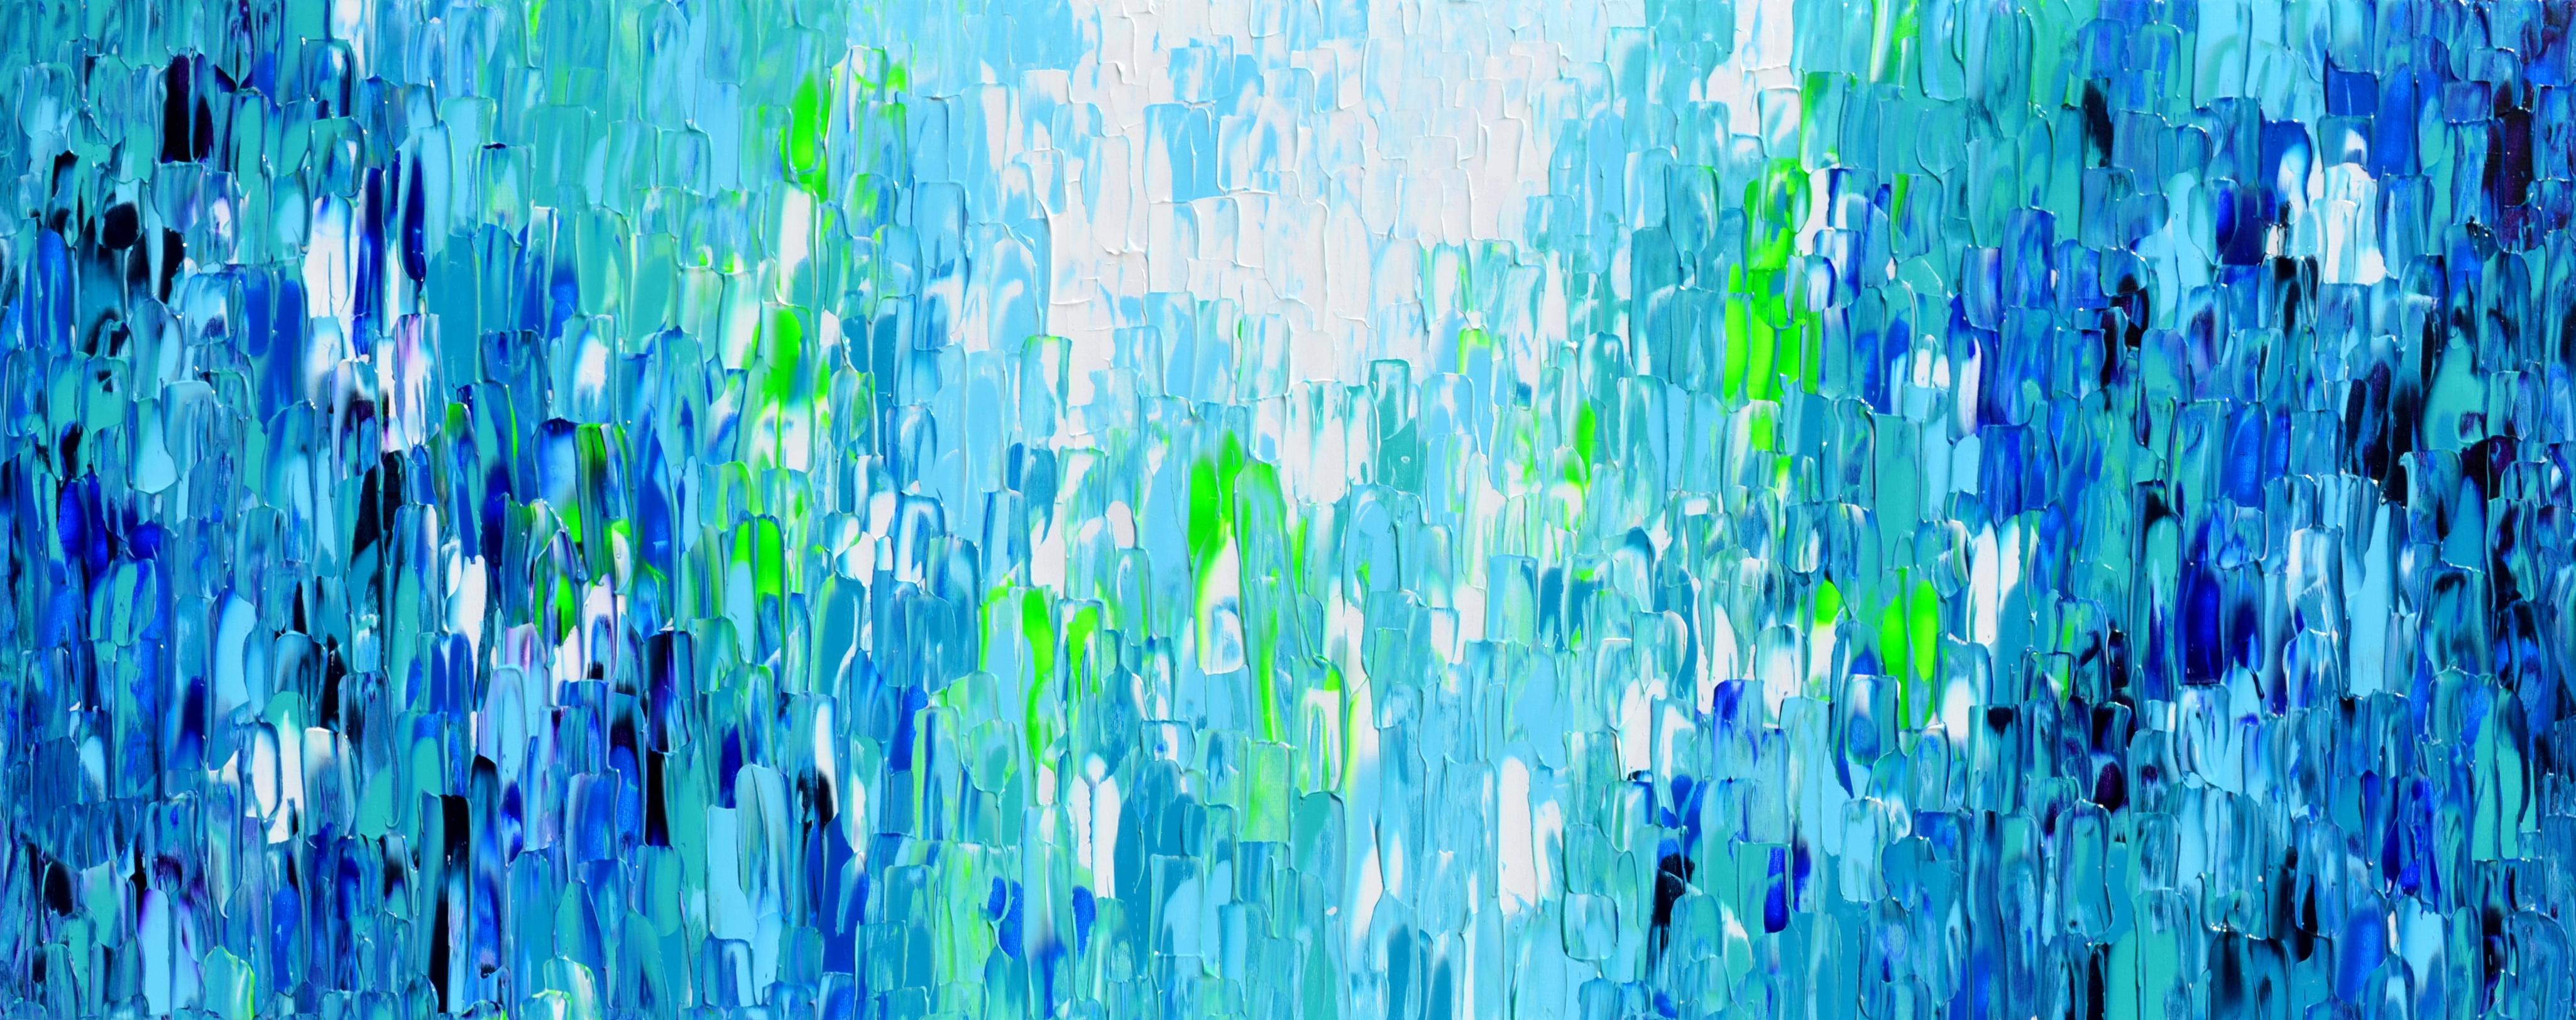 Abstract Painting SOOS TIBERIU - Couteau à palette bleu abstrait en relief 9 - Grande peinture texturée océanique